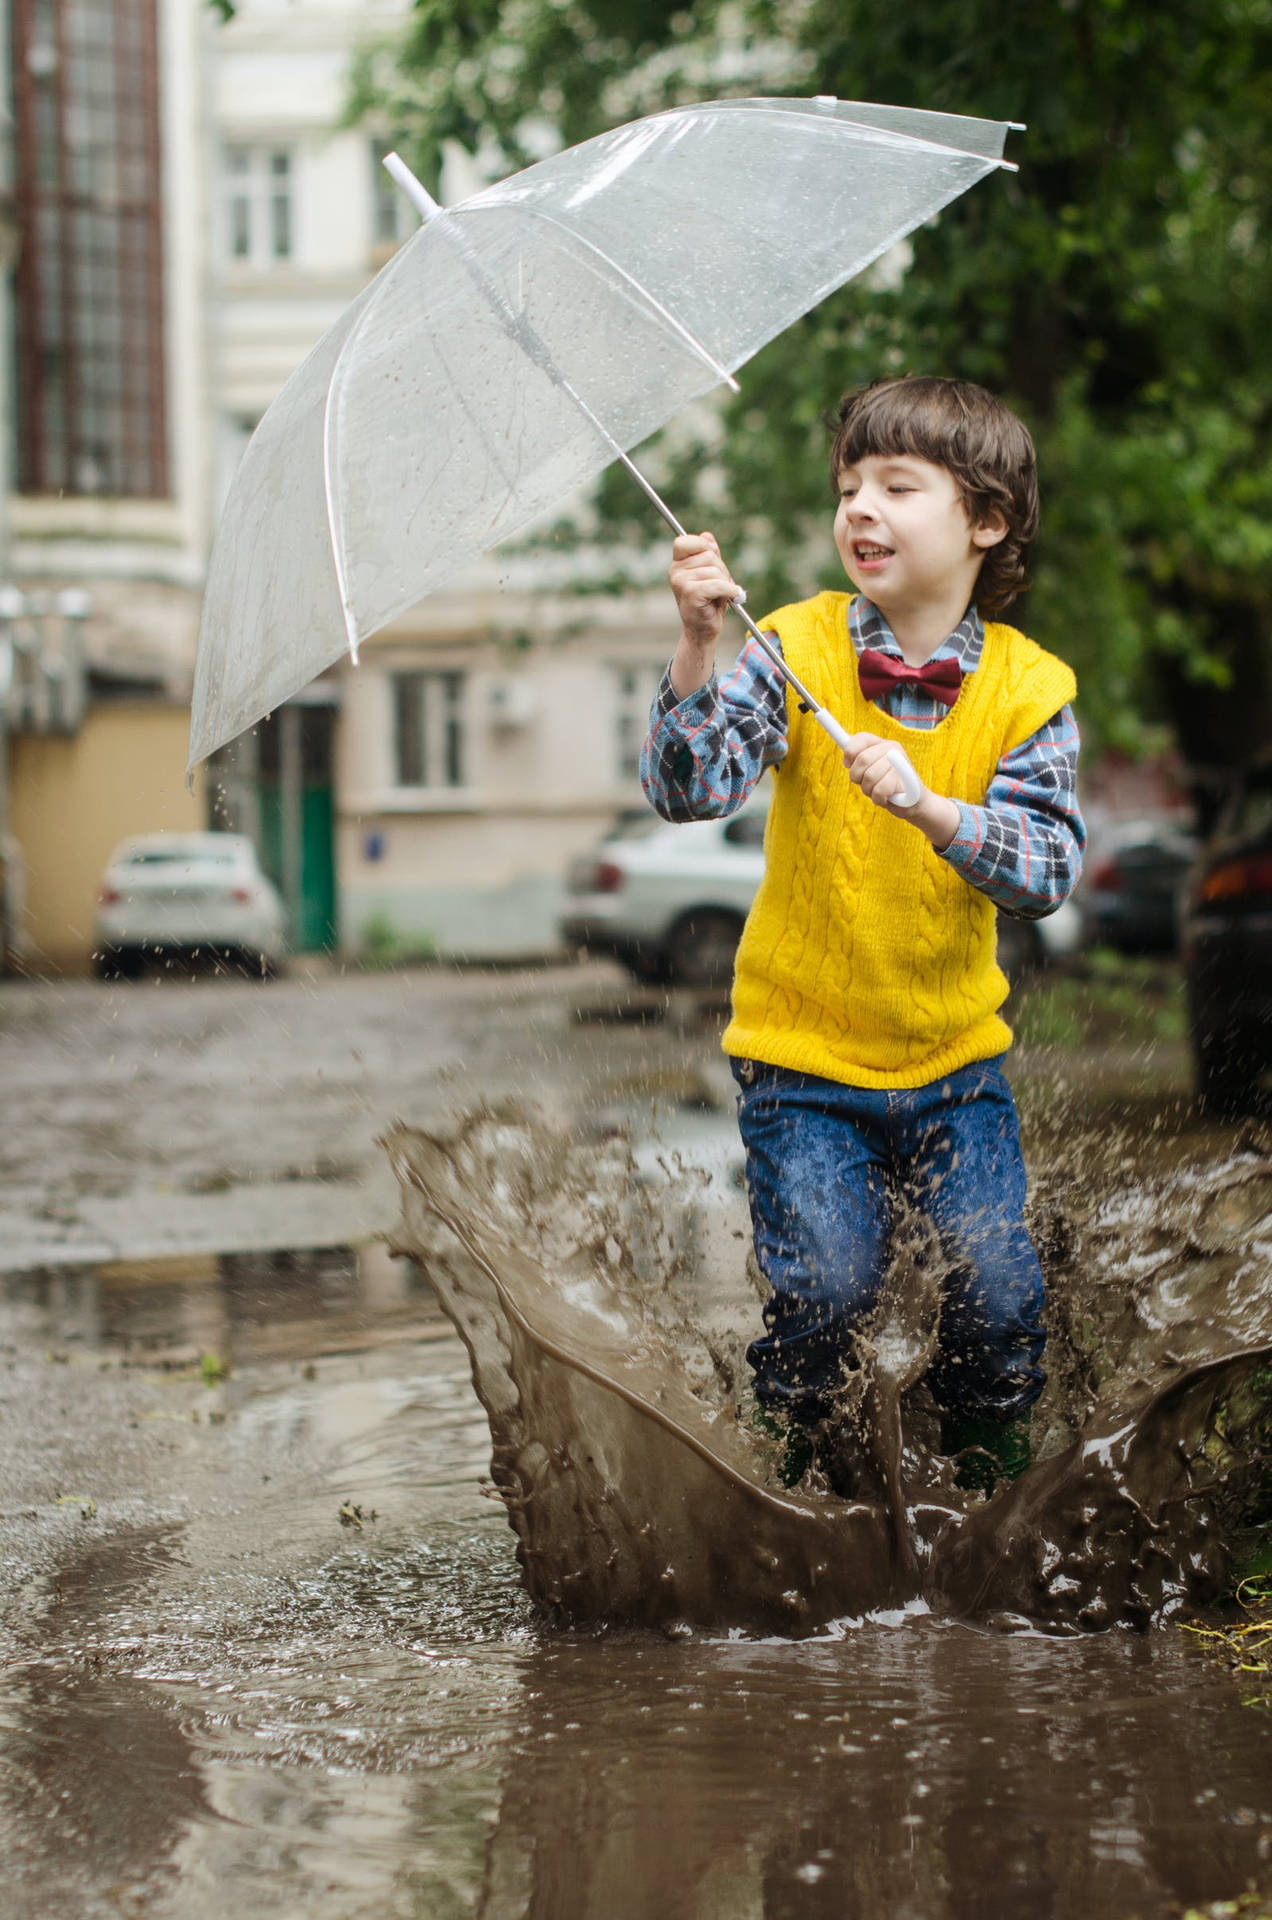 Dreng leger udenfor mens det regner Wallpaper